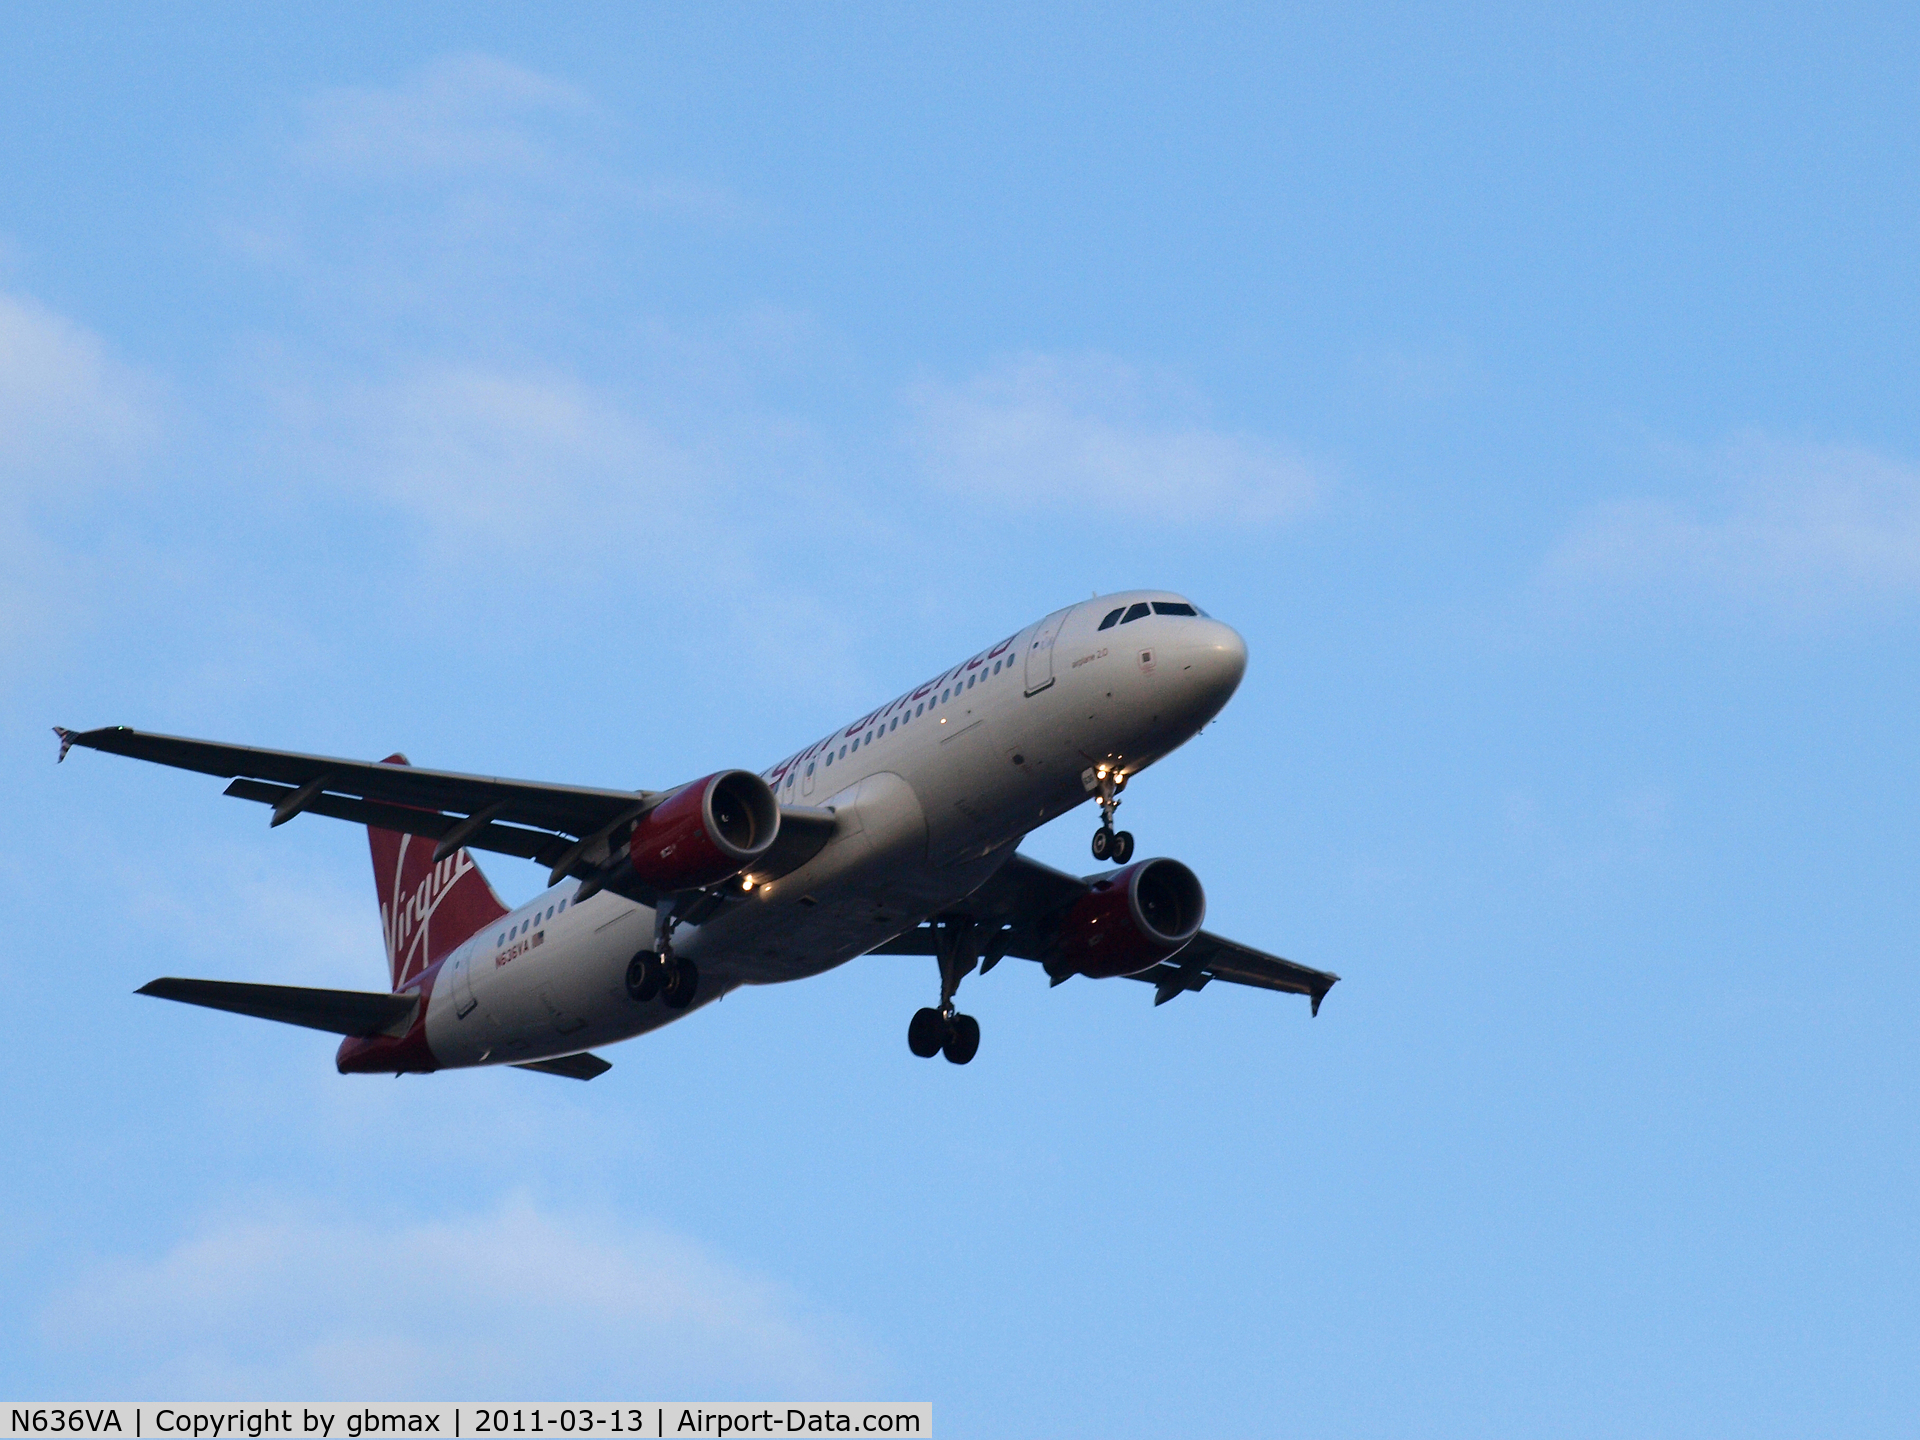 N636VA, 2008 Airbus A320-214 C/N 3460, Going to landing @ JFK